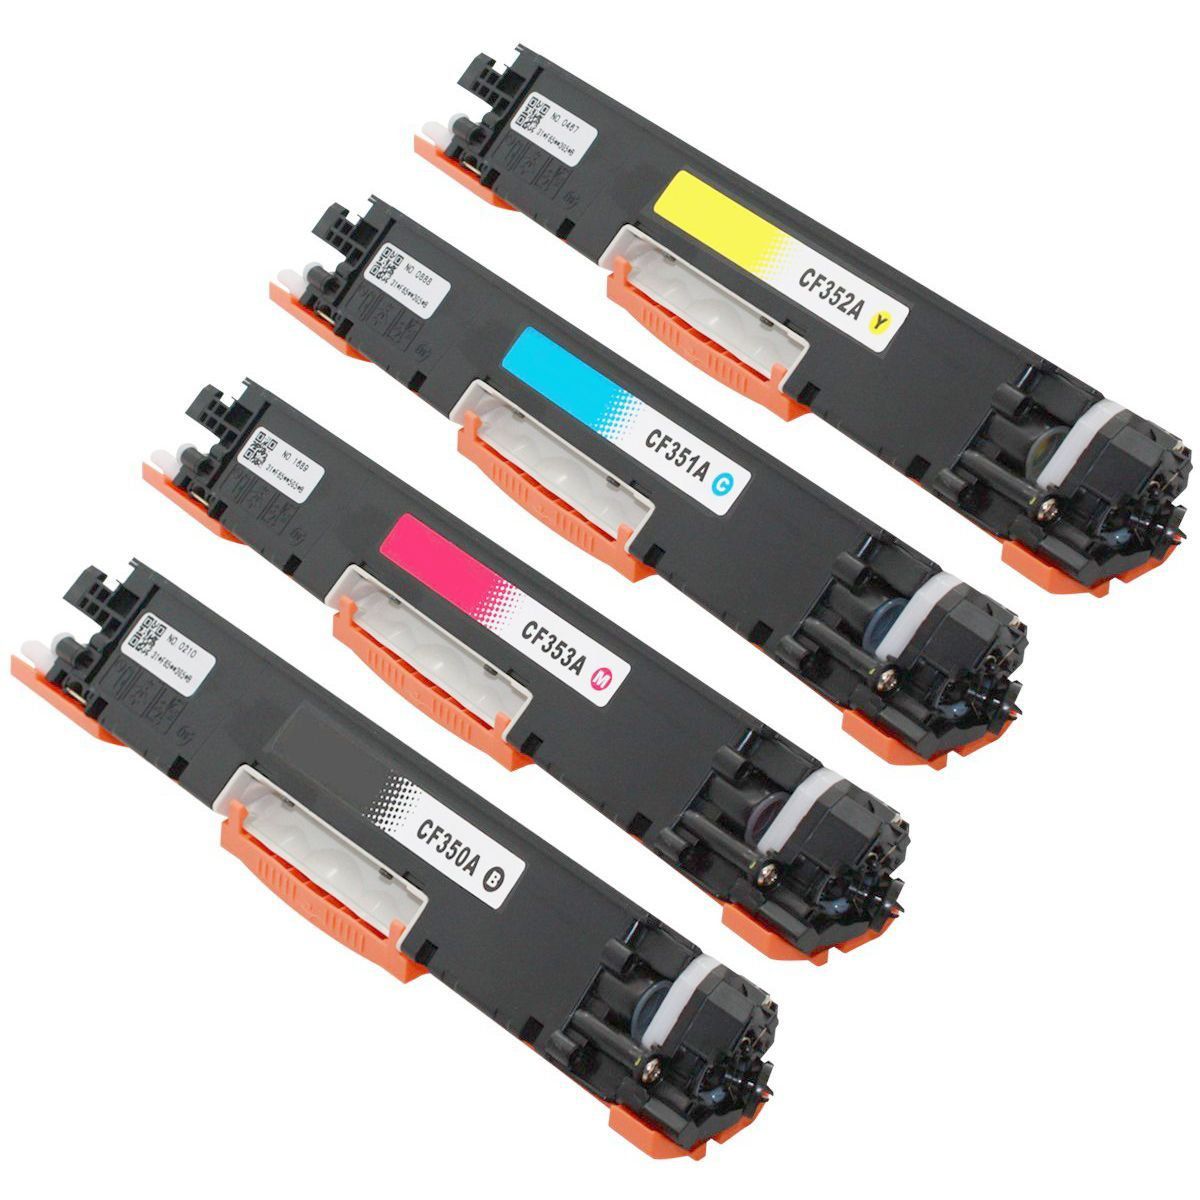 Kit Colorido Toner Compatível com CE310A 311A 312A 313A para Impressora HP Color M175 M175a M175nw M175nw mfp 175nw